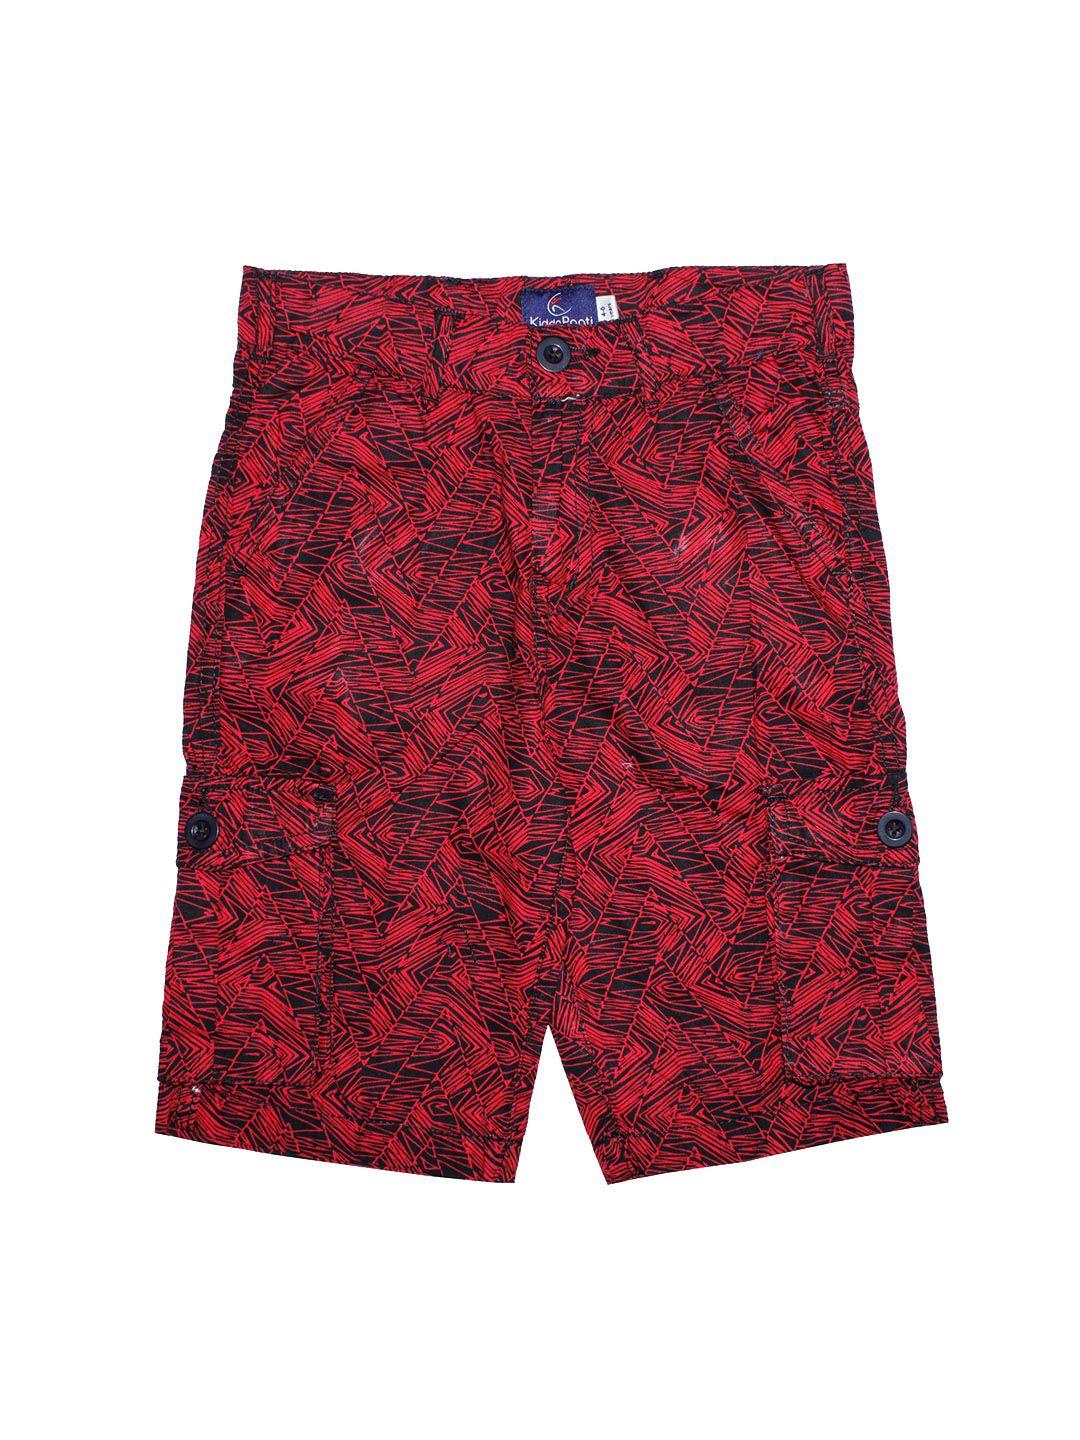 kiddopanti boys red printed regular fit cotton shorts